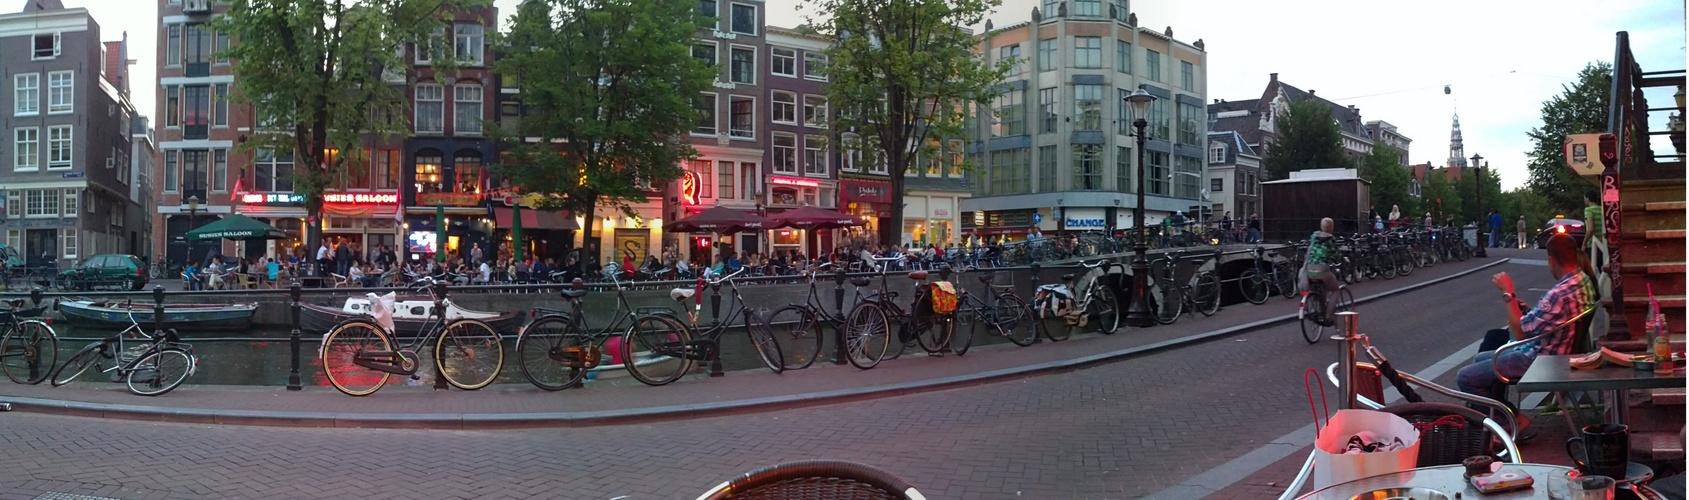 Abendstimmung in Amsterdam